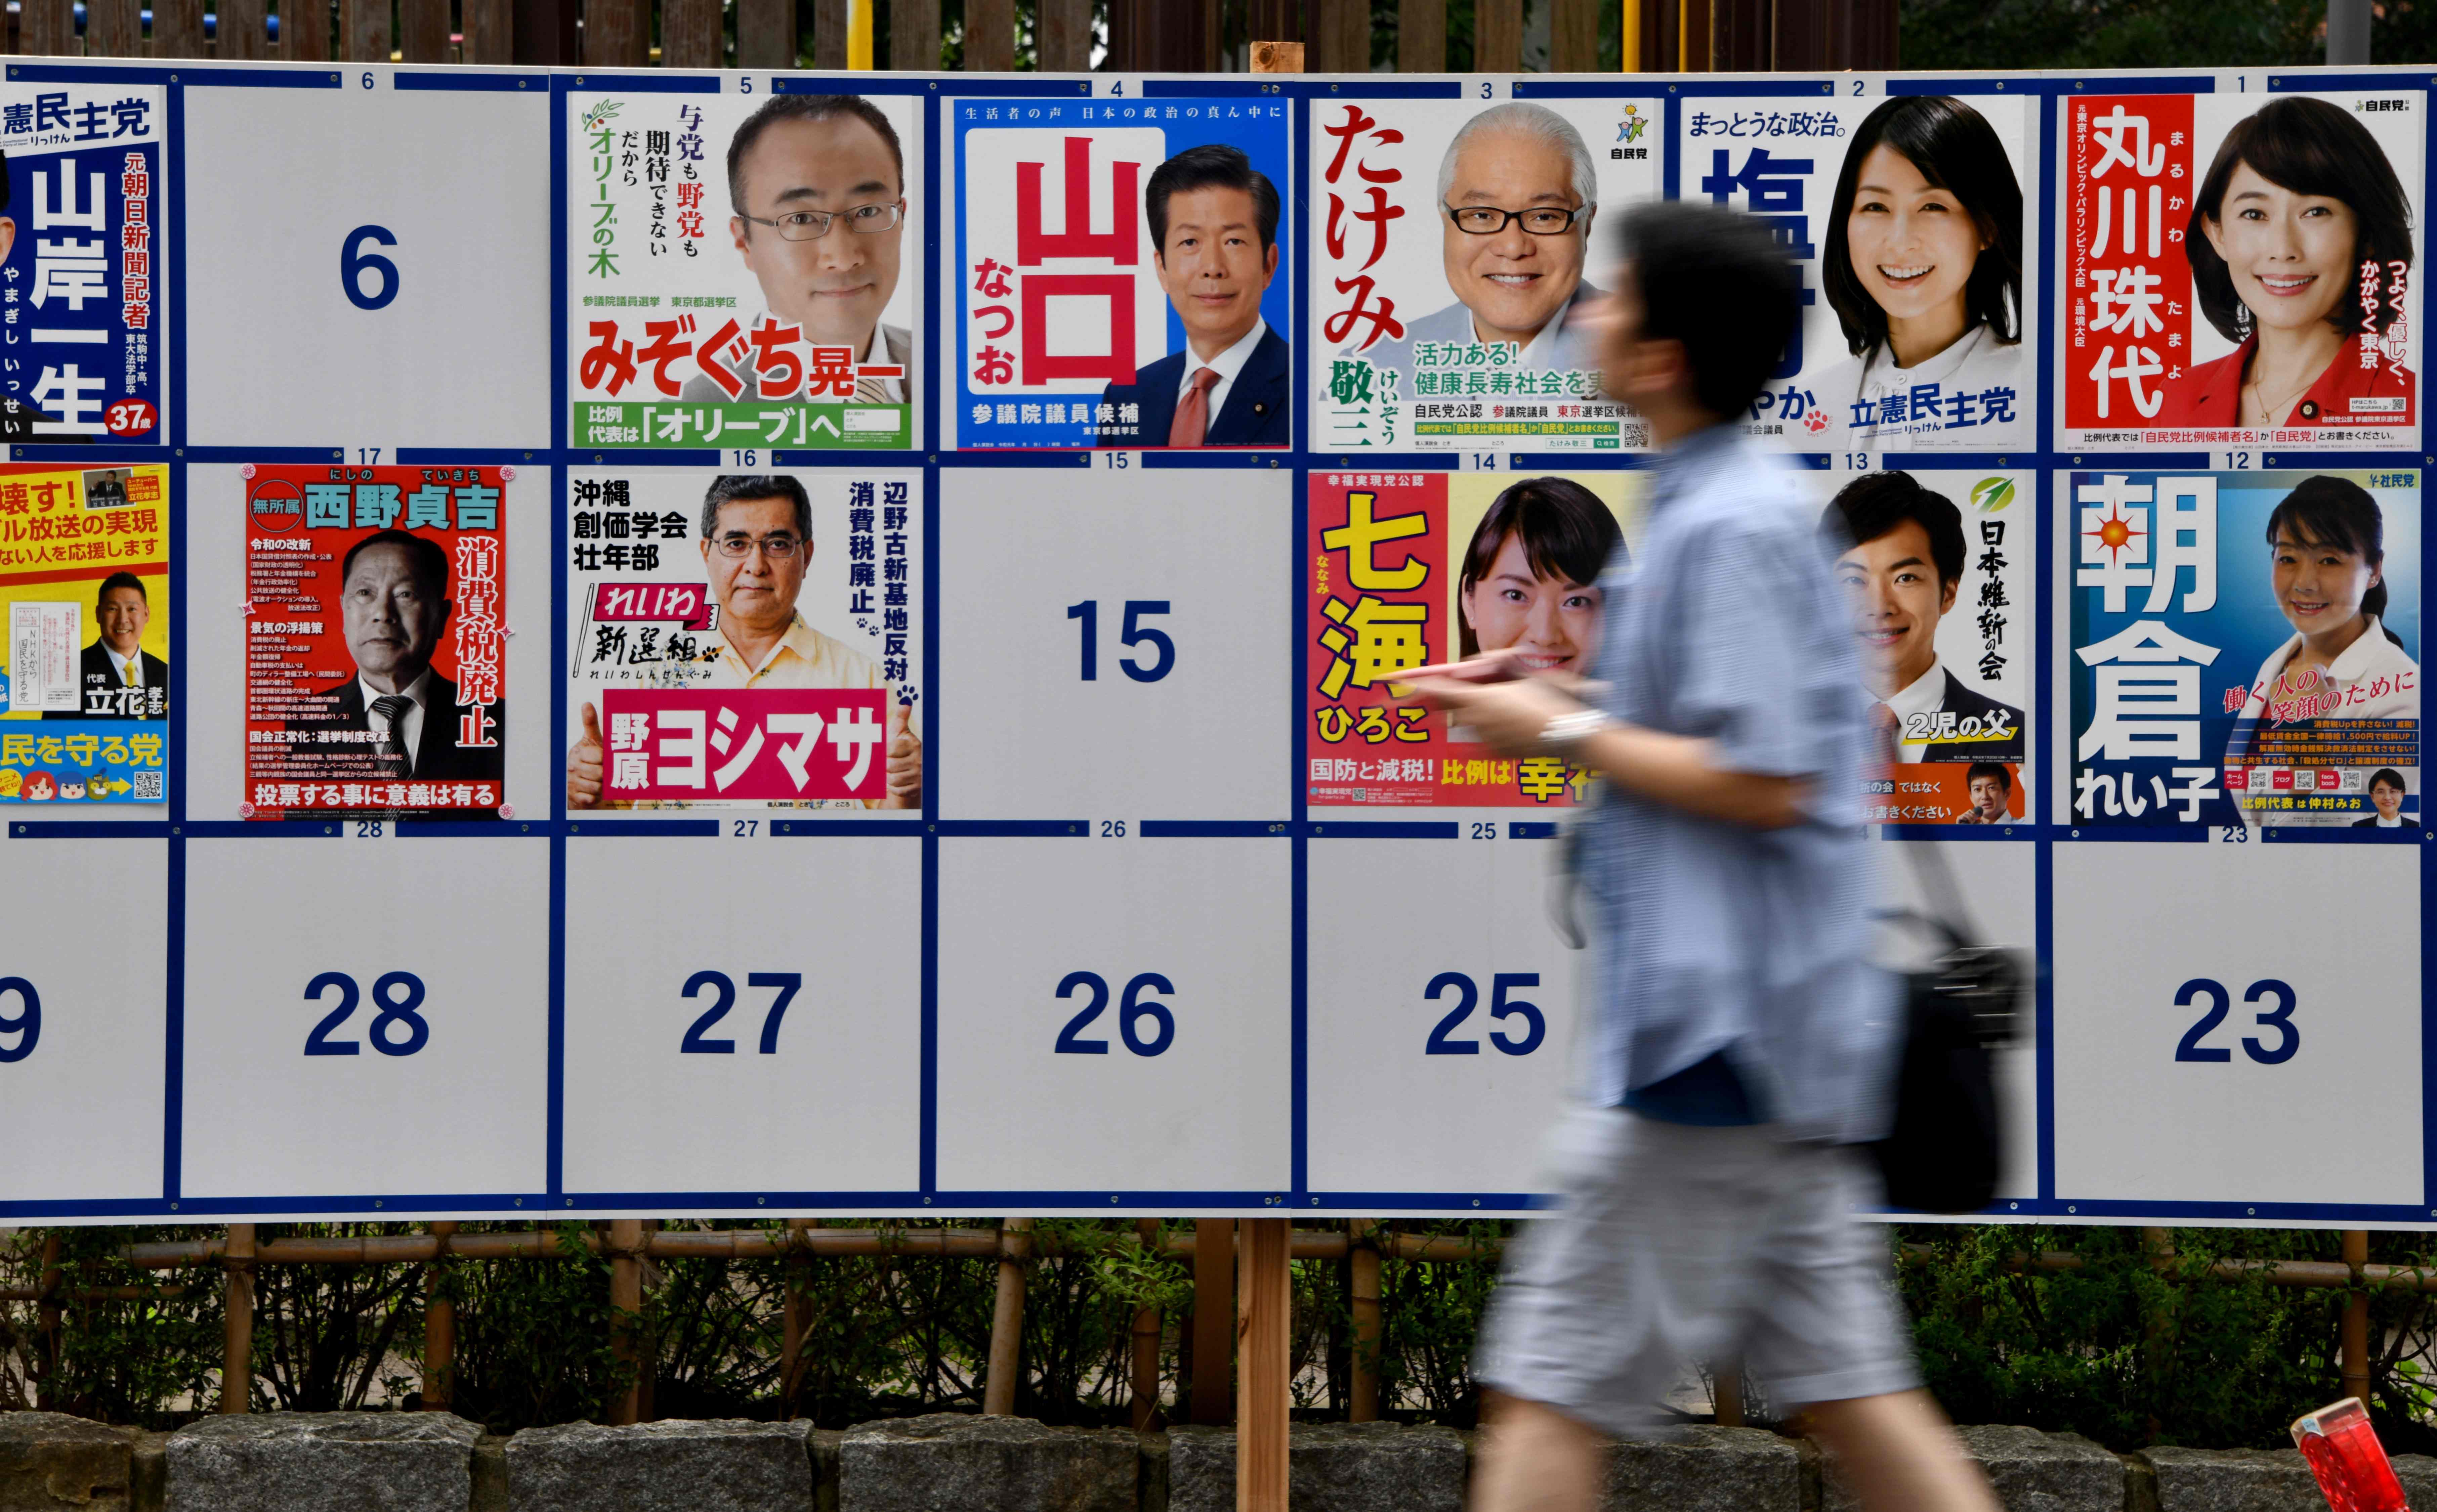 （外代一线）（5）日本参议院选举投票在即(2824088)-20190720225248.JPG